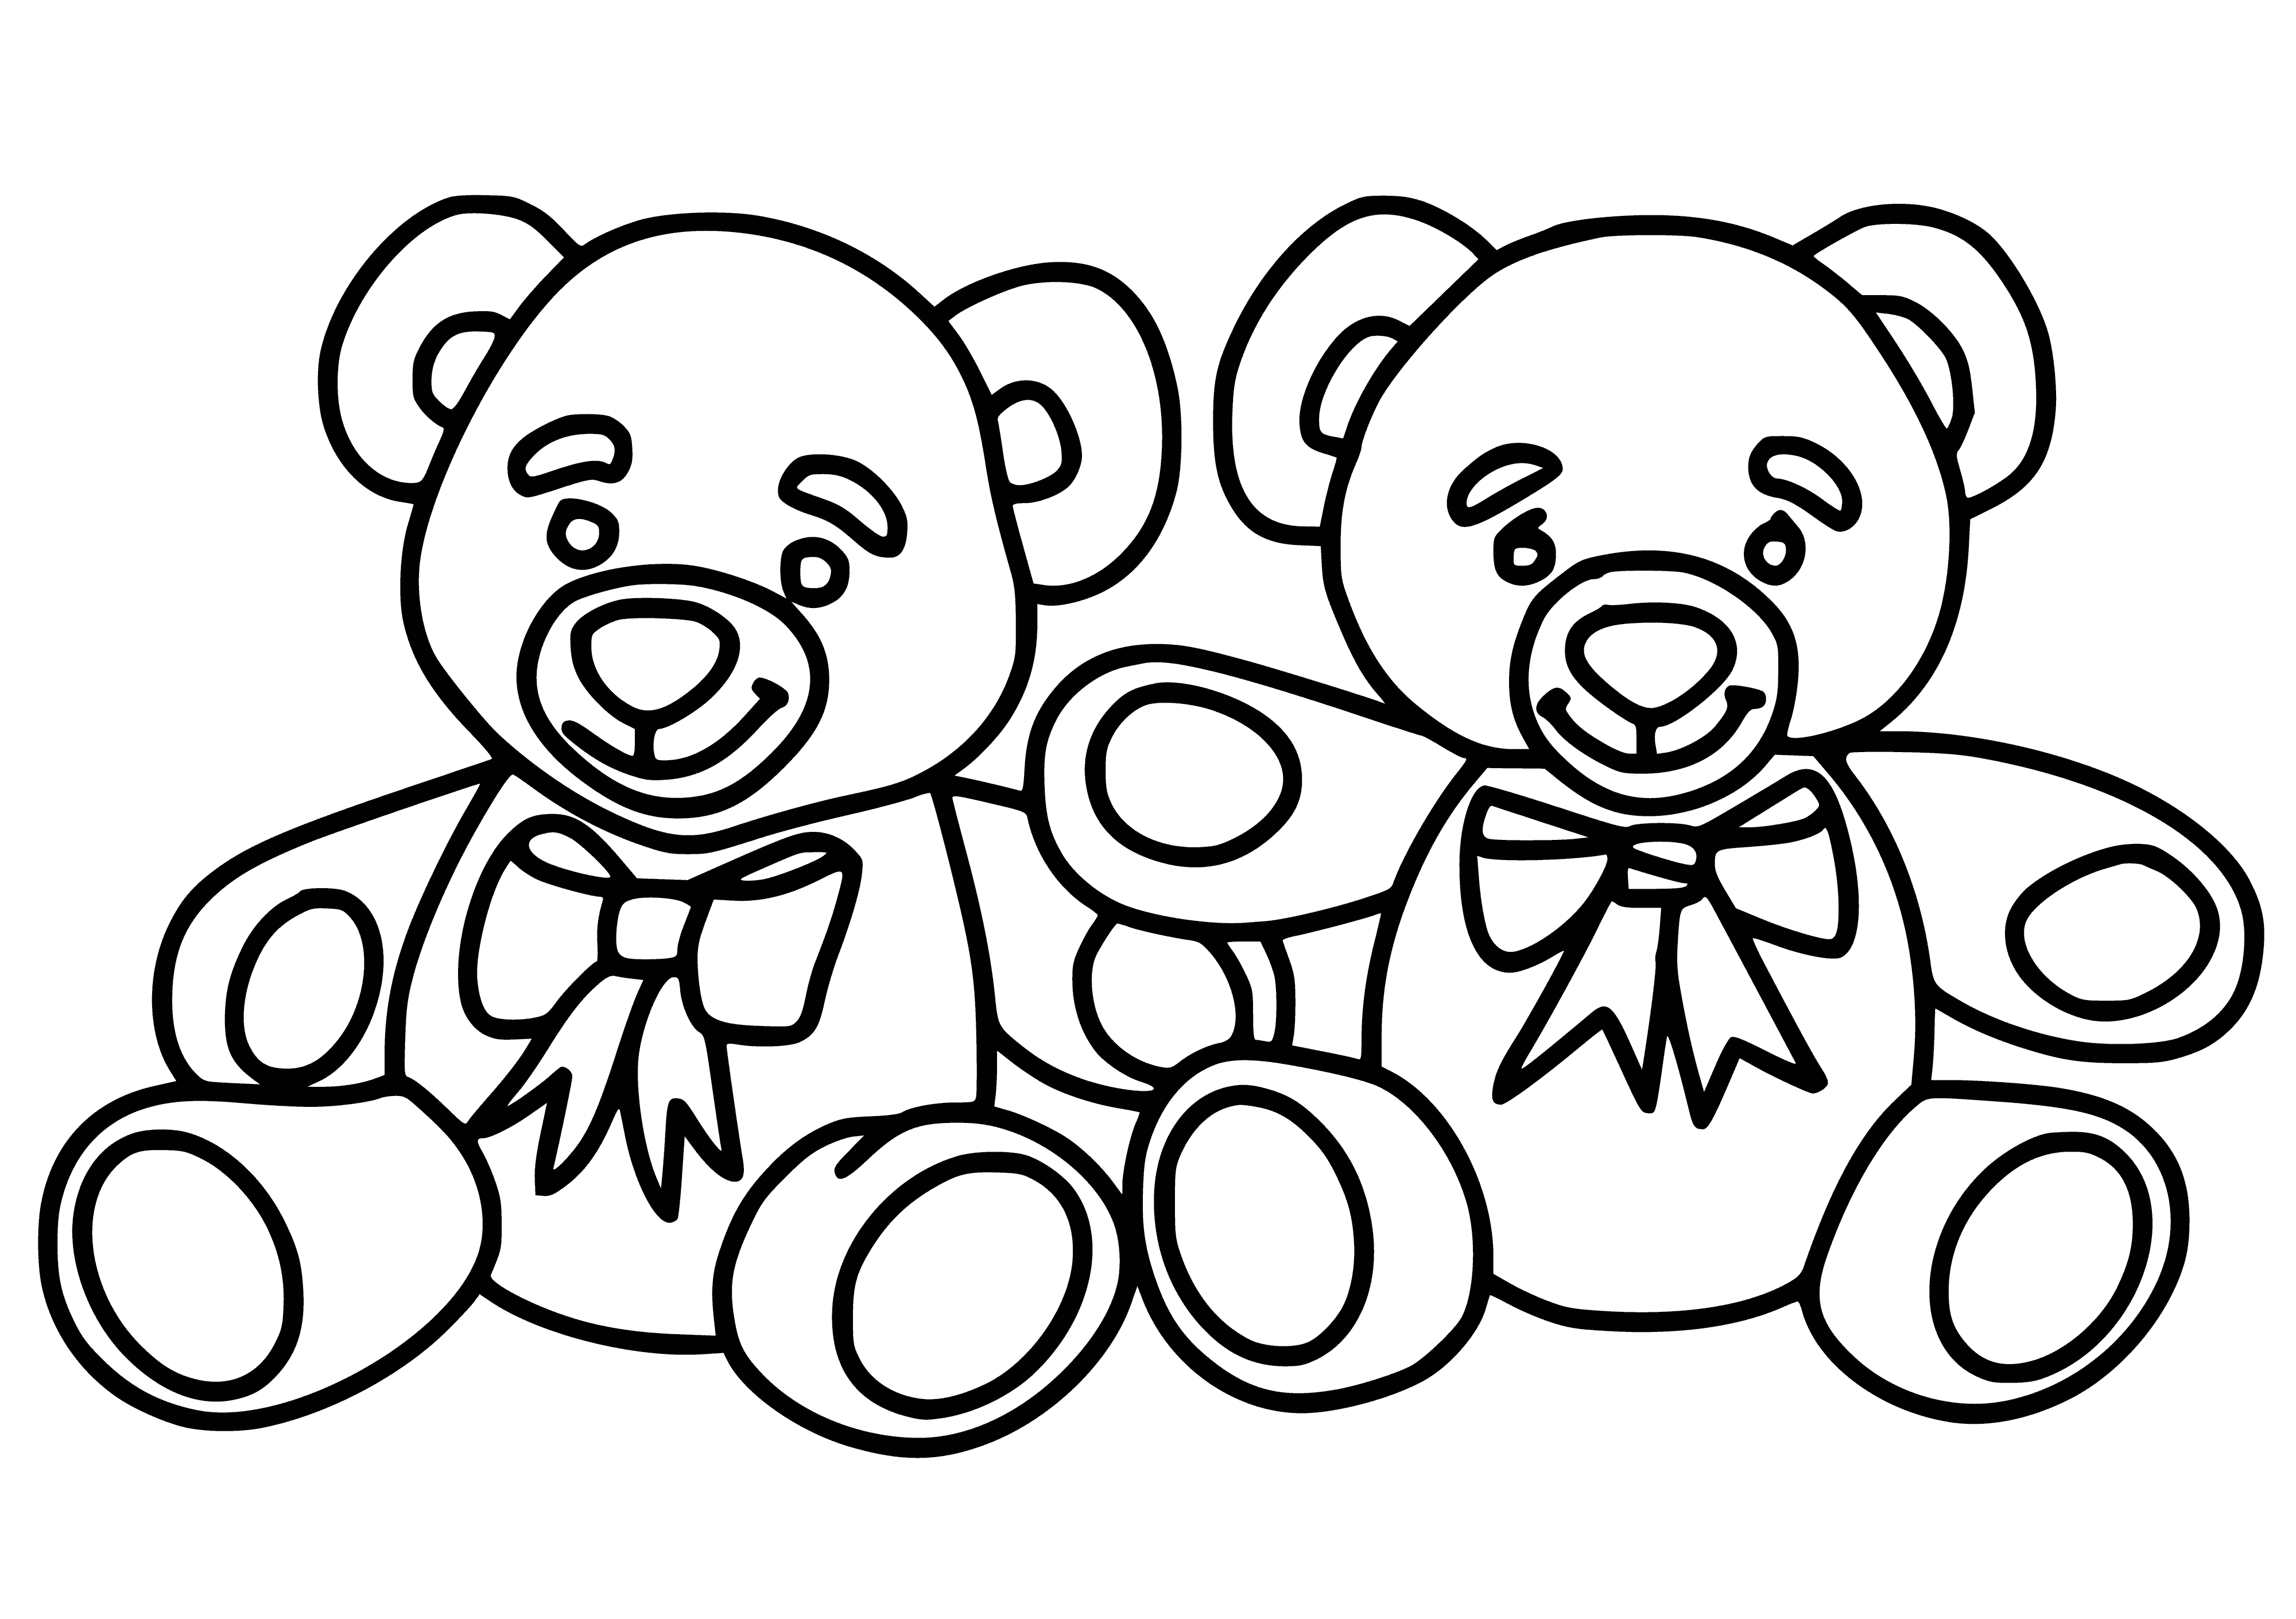 Раскраска игрушка картинка. Раскраска. Медвежонок. Раскраска "мишки". Медвежонок раскраска для детей. Мишка раскраска для малышей.